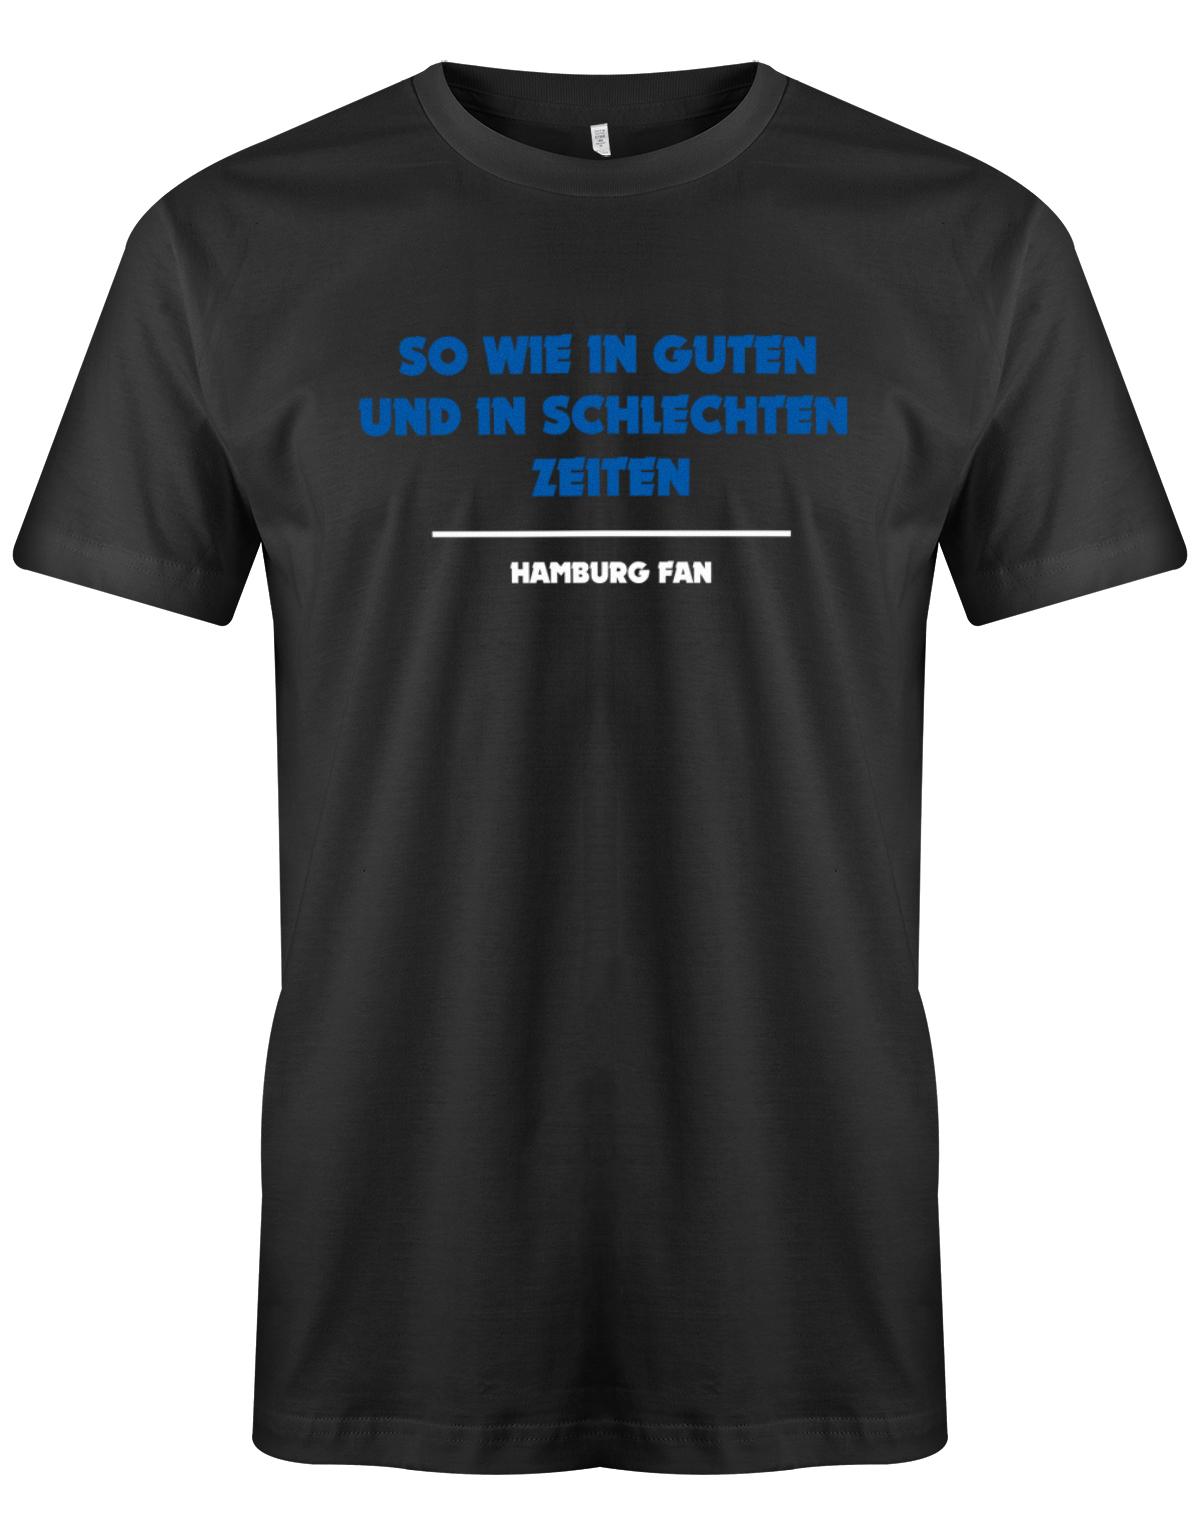 So-wie-in-guten-udn-in-schlechten-Zeiten-Hamburg-fan-Hamburg-shirt-Schwarz